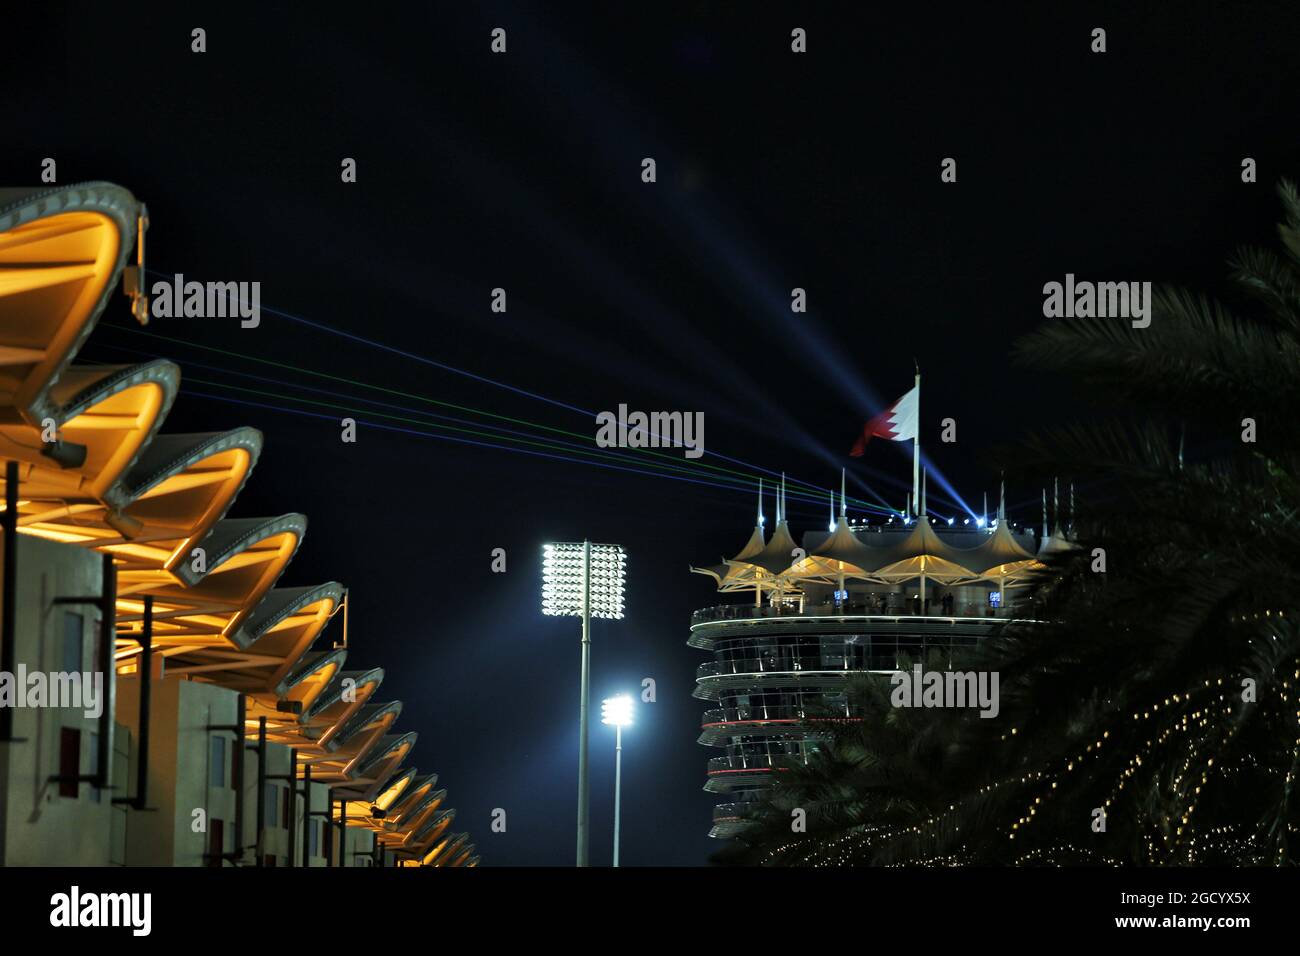 Le paddock la nuit. Grand Prix de Bahreïn, vendredi 29 mars 2019. Sakhir, Bahreïn. Banque D'Images